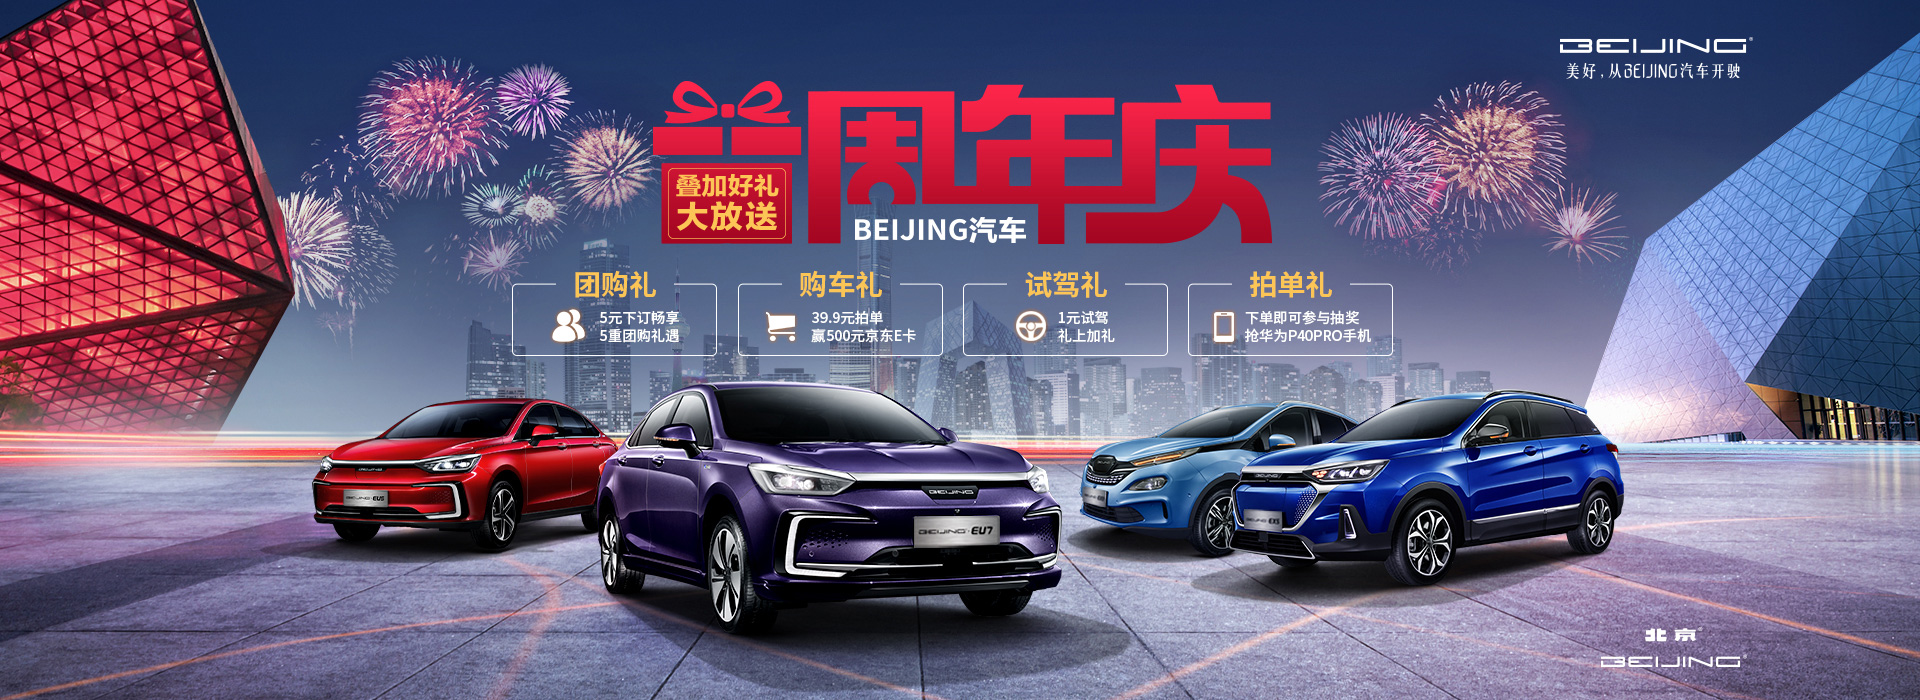 北京摇号新政将实施 “无车家庭”选BEIJING-EU5还是秦EV？